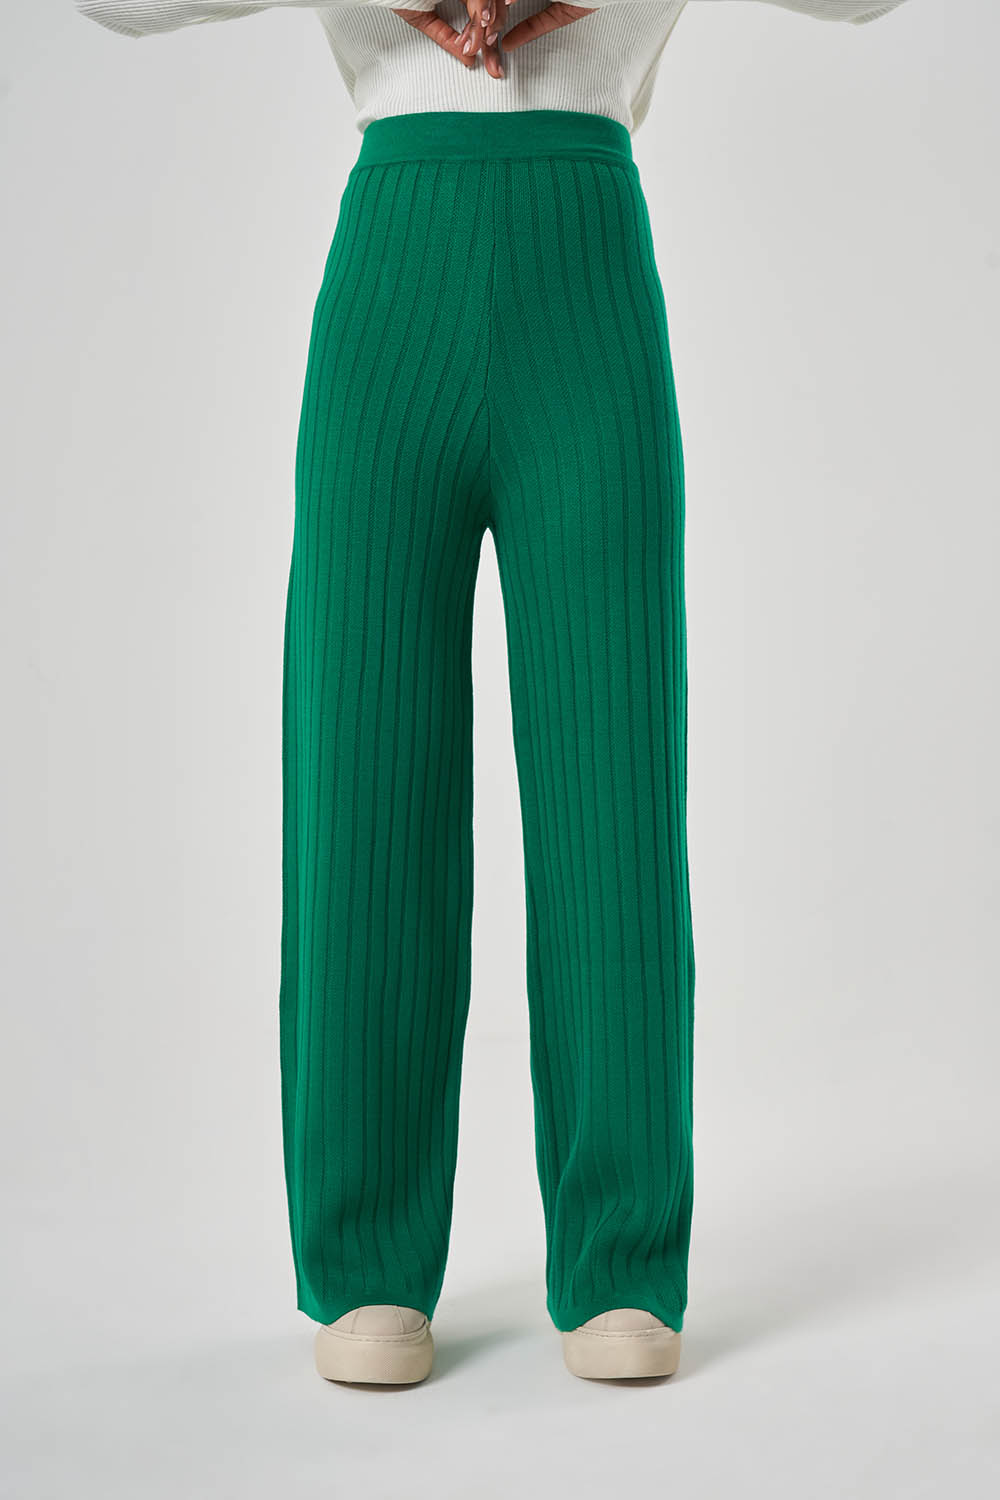 Fitilli Akrilik Yeşil Pantolon